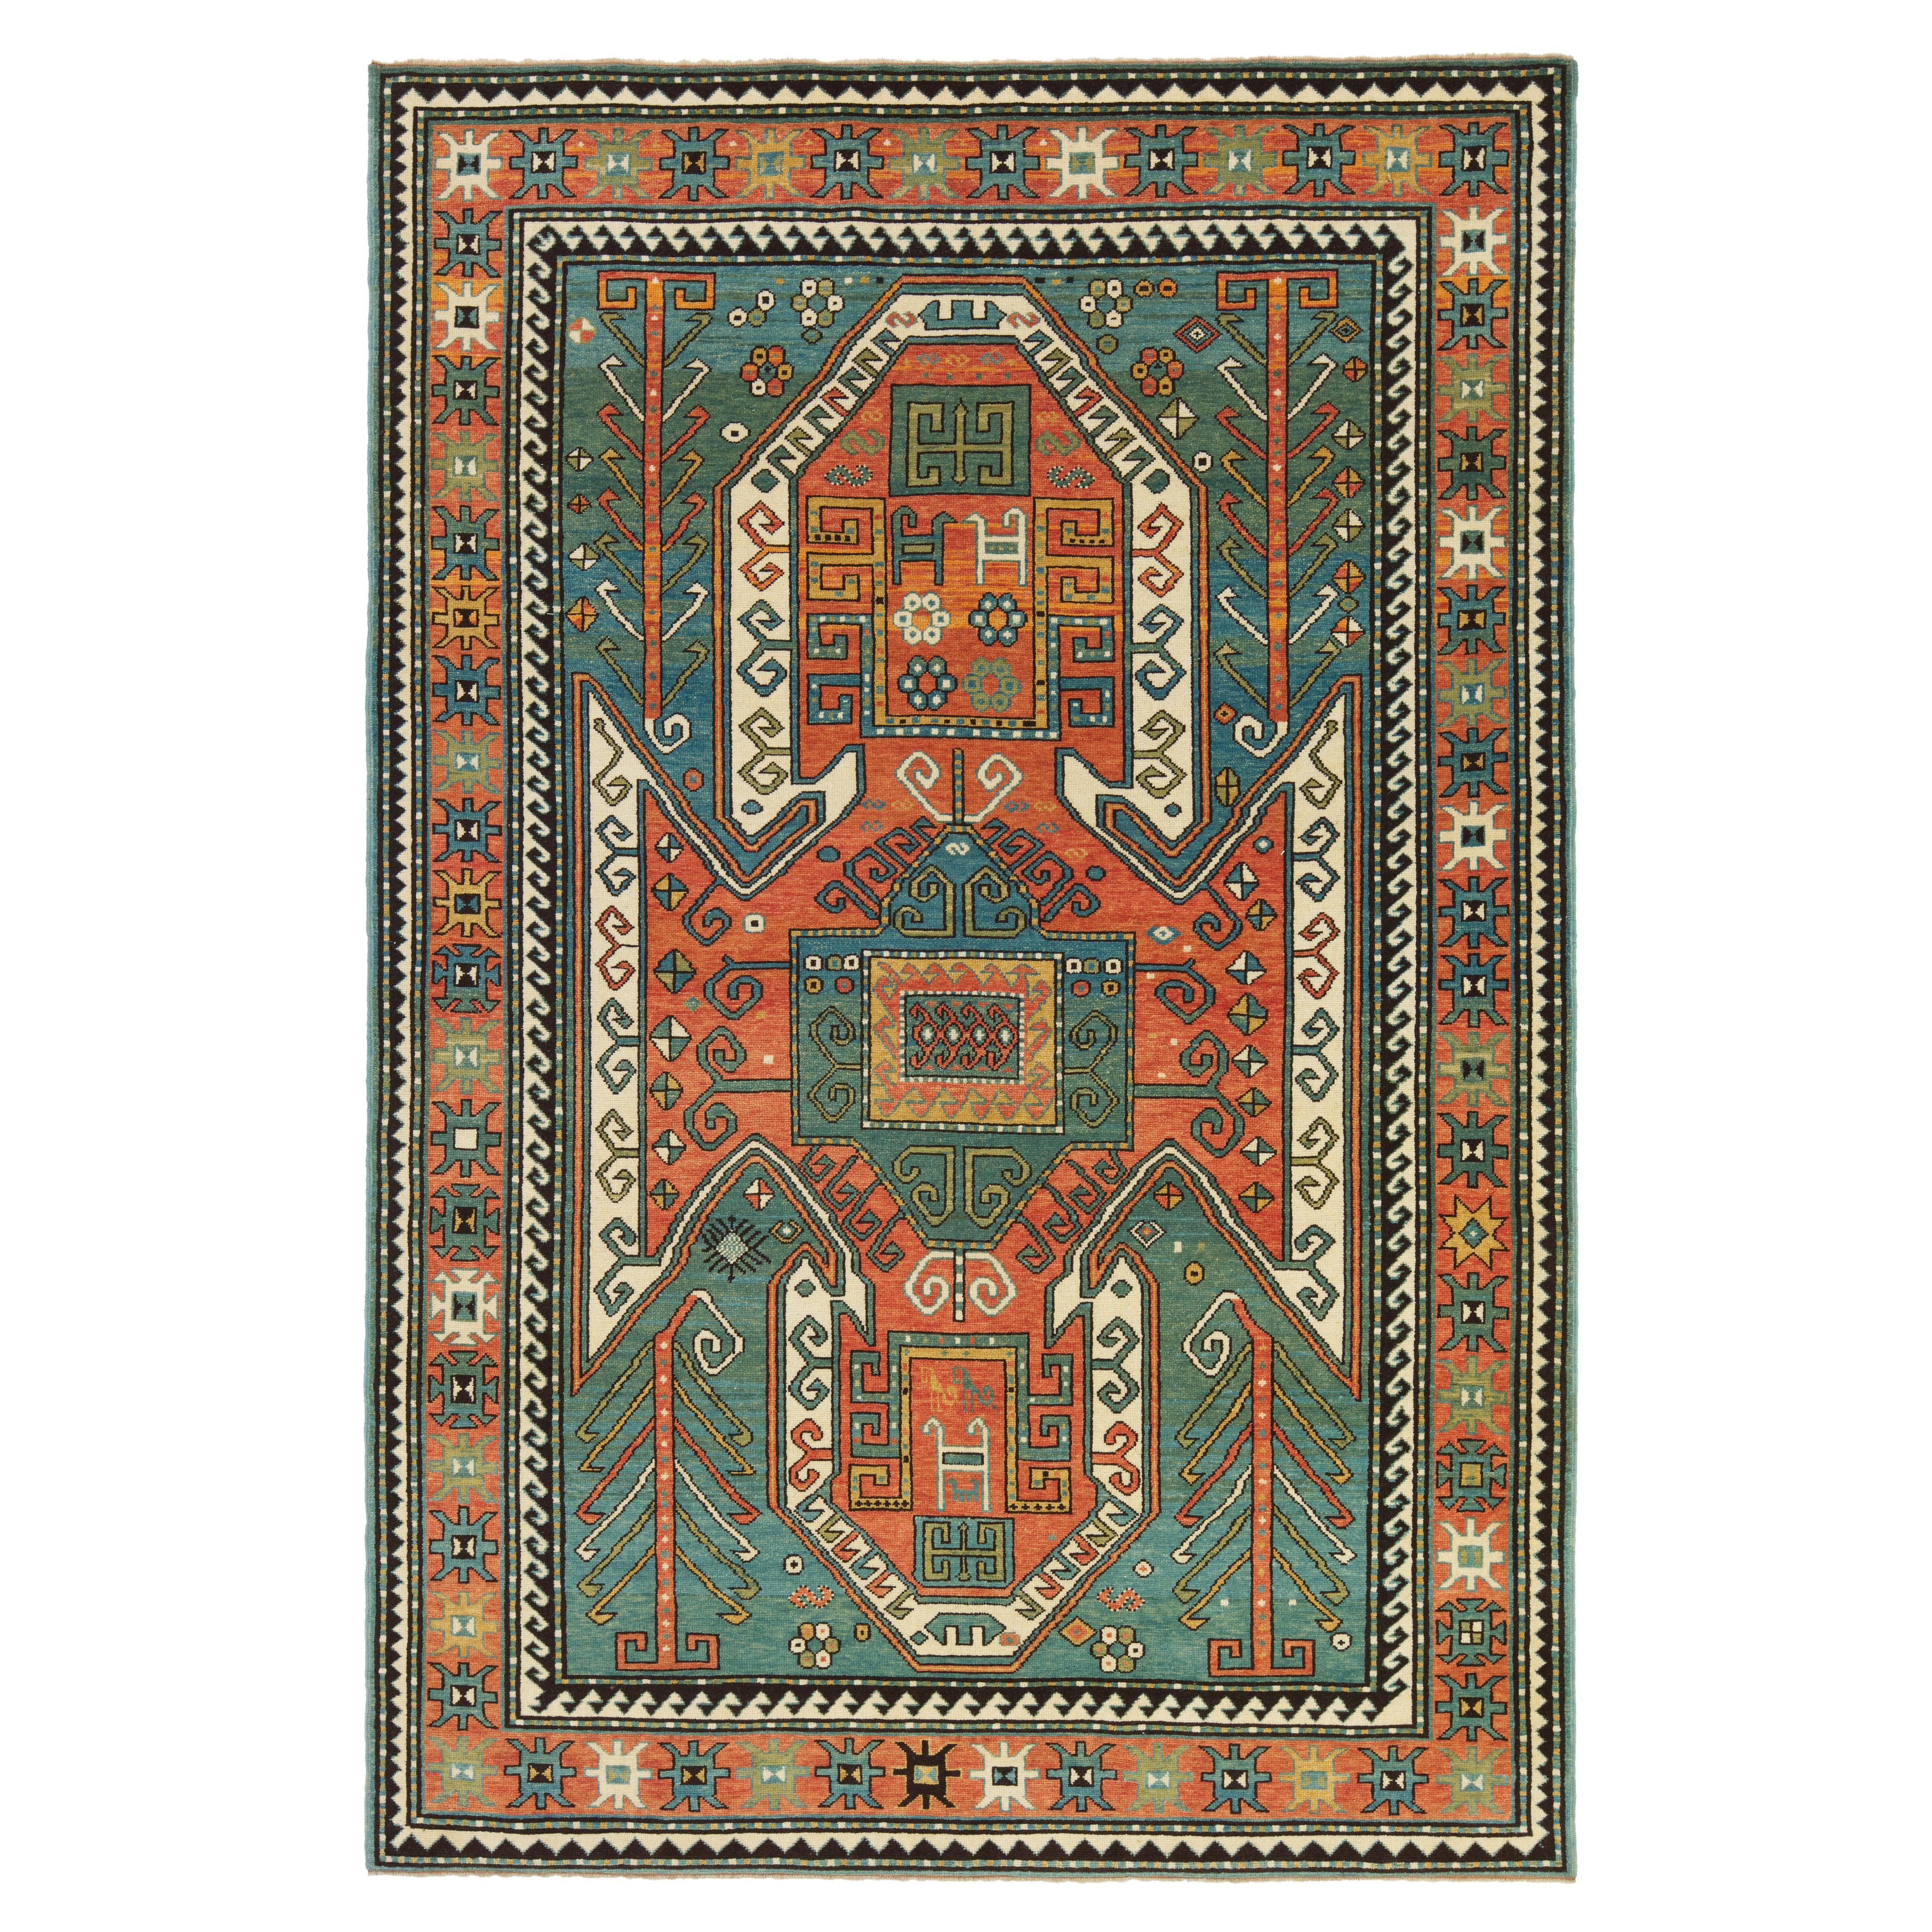 Ararat-Teppich Sewan Kazak - Kaukasischer Teppich im Kaukasischen Stil des 19. Jahrhunderts, natürlich gefärbt